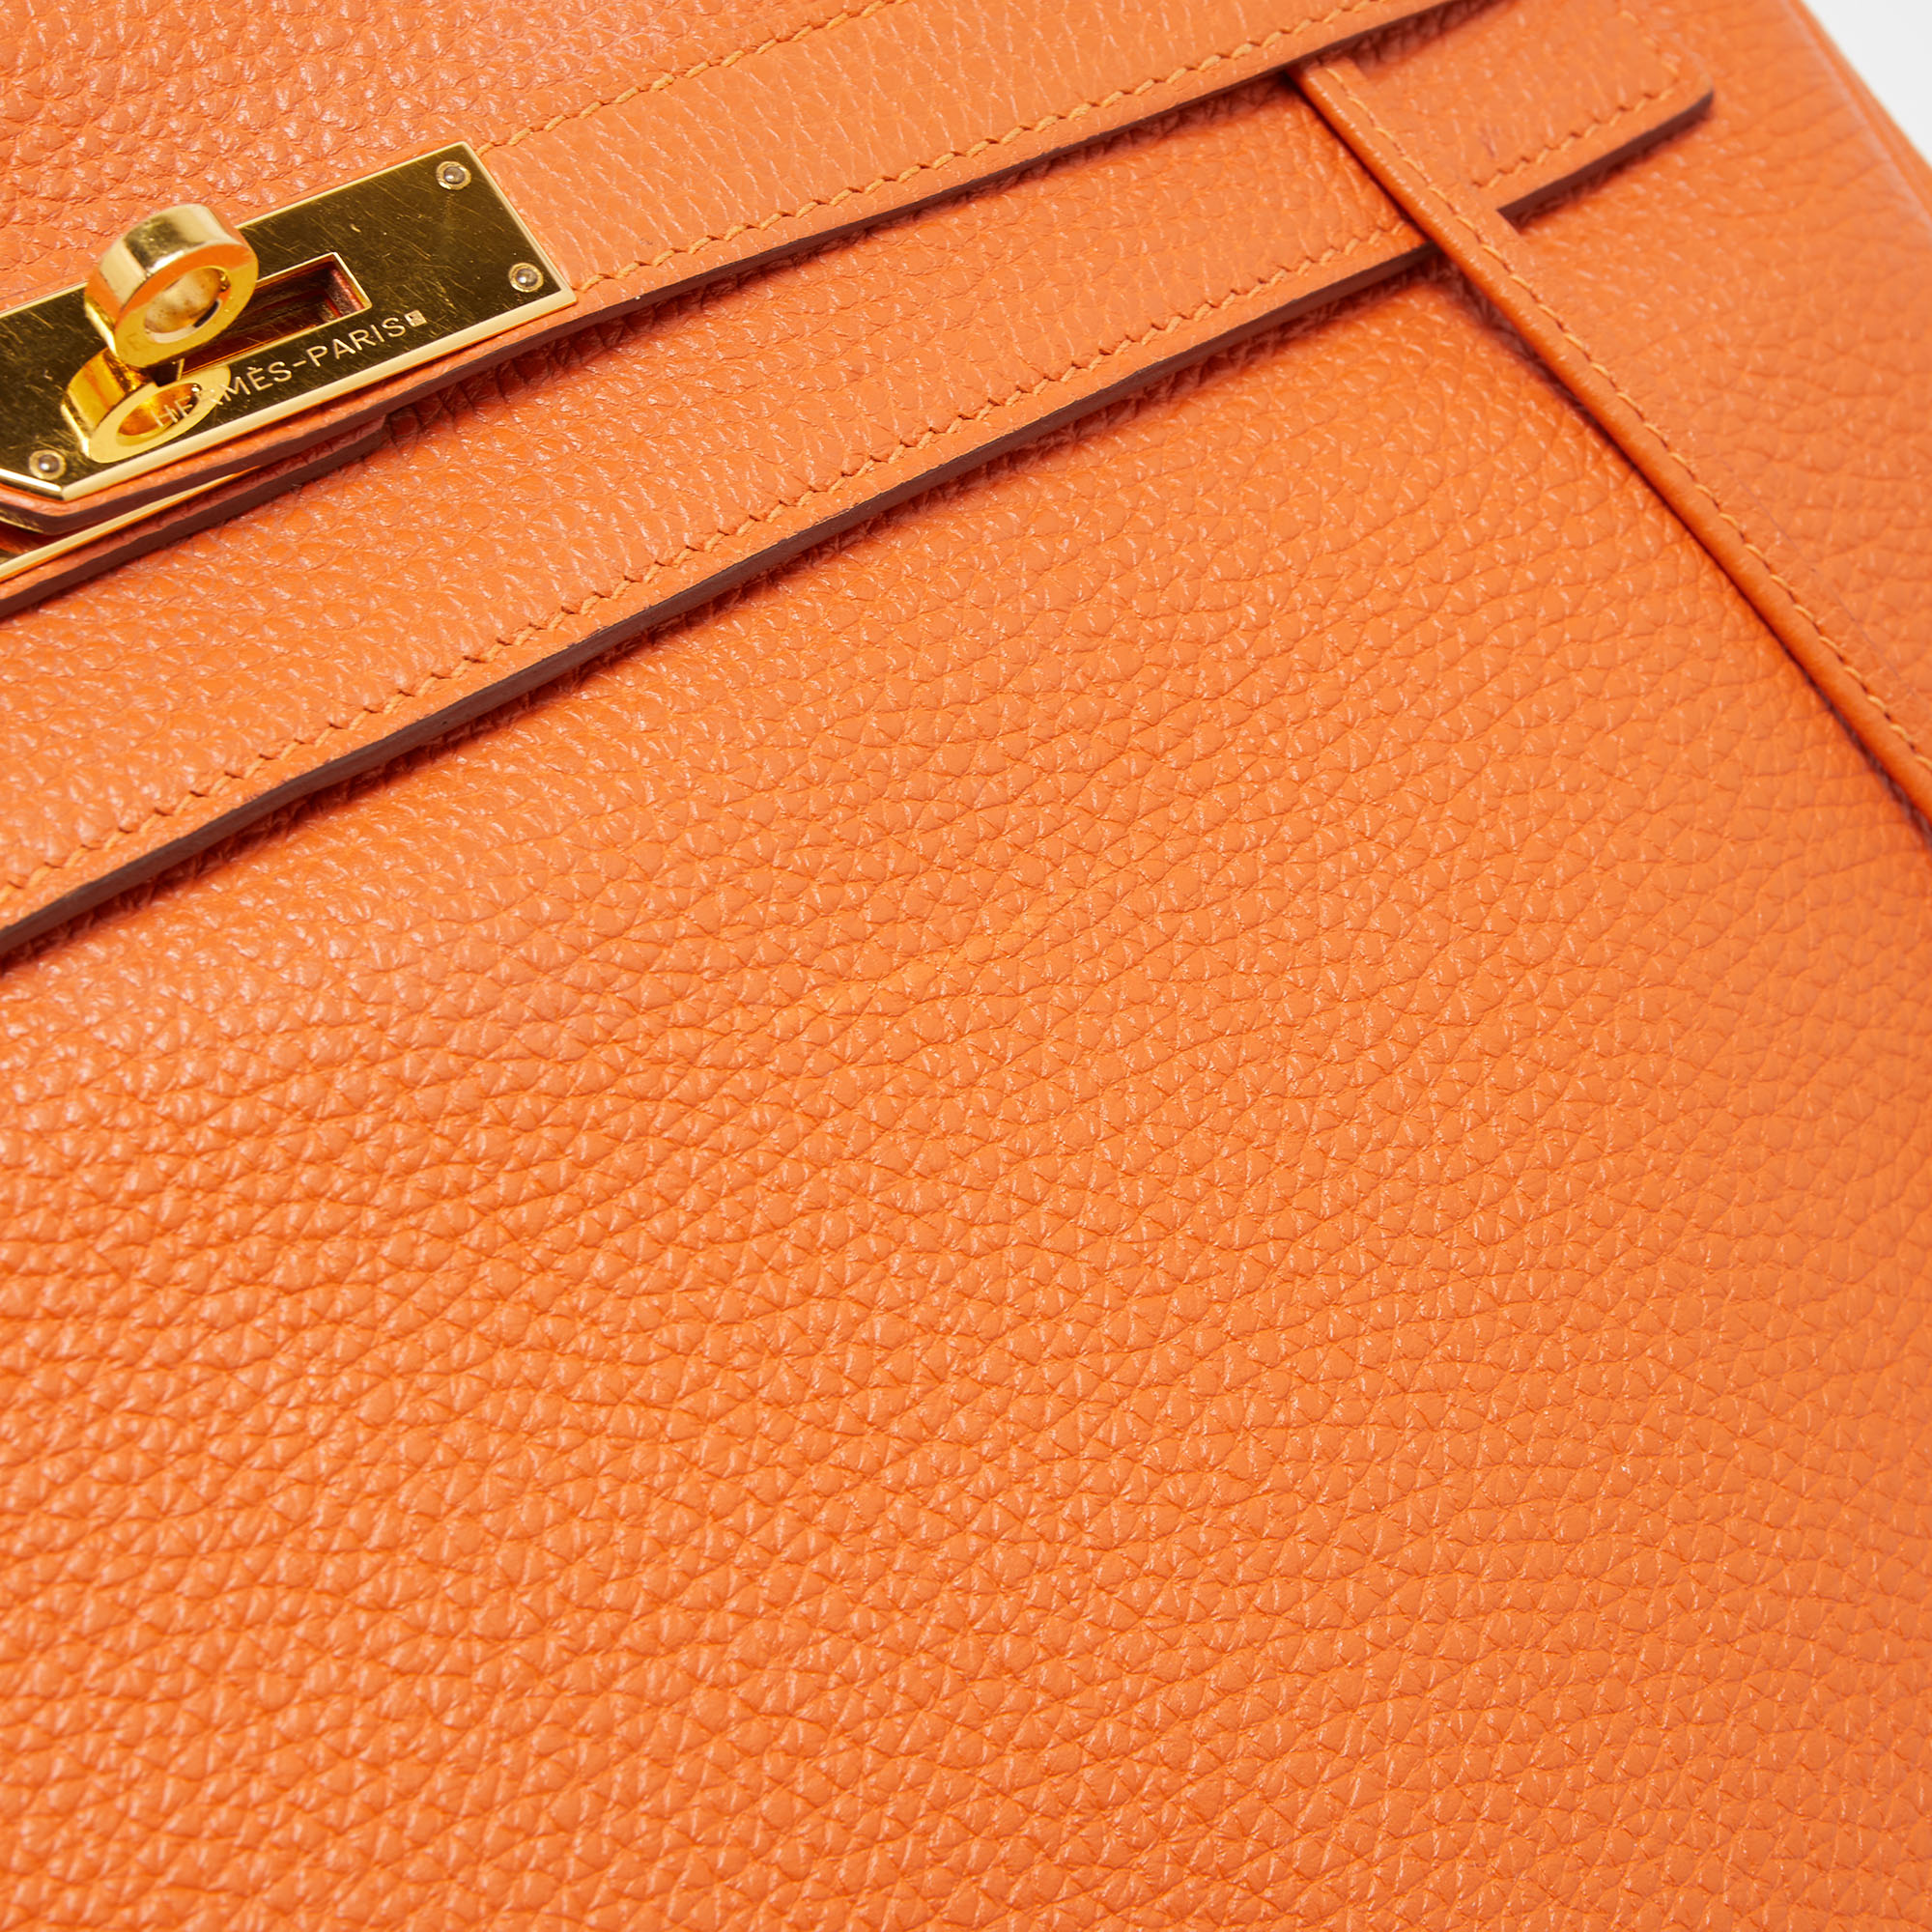 Hermès Orange Togo Leather Gold Finish Kelly Retourne 35 Bag Hermes